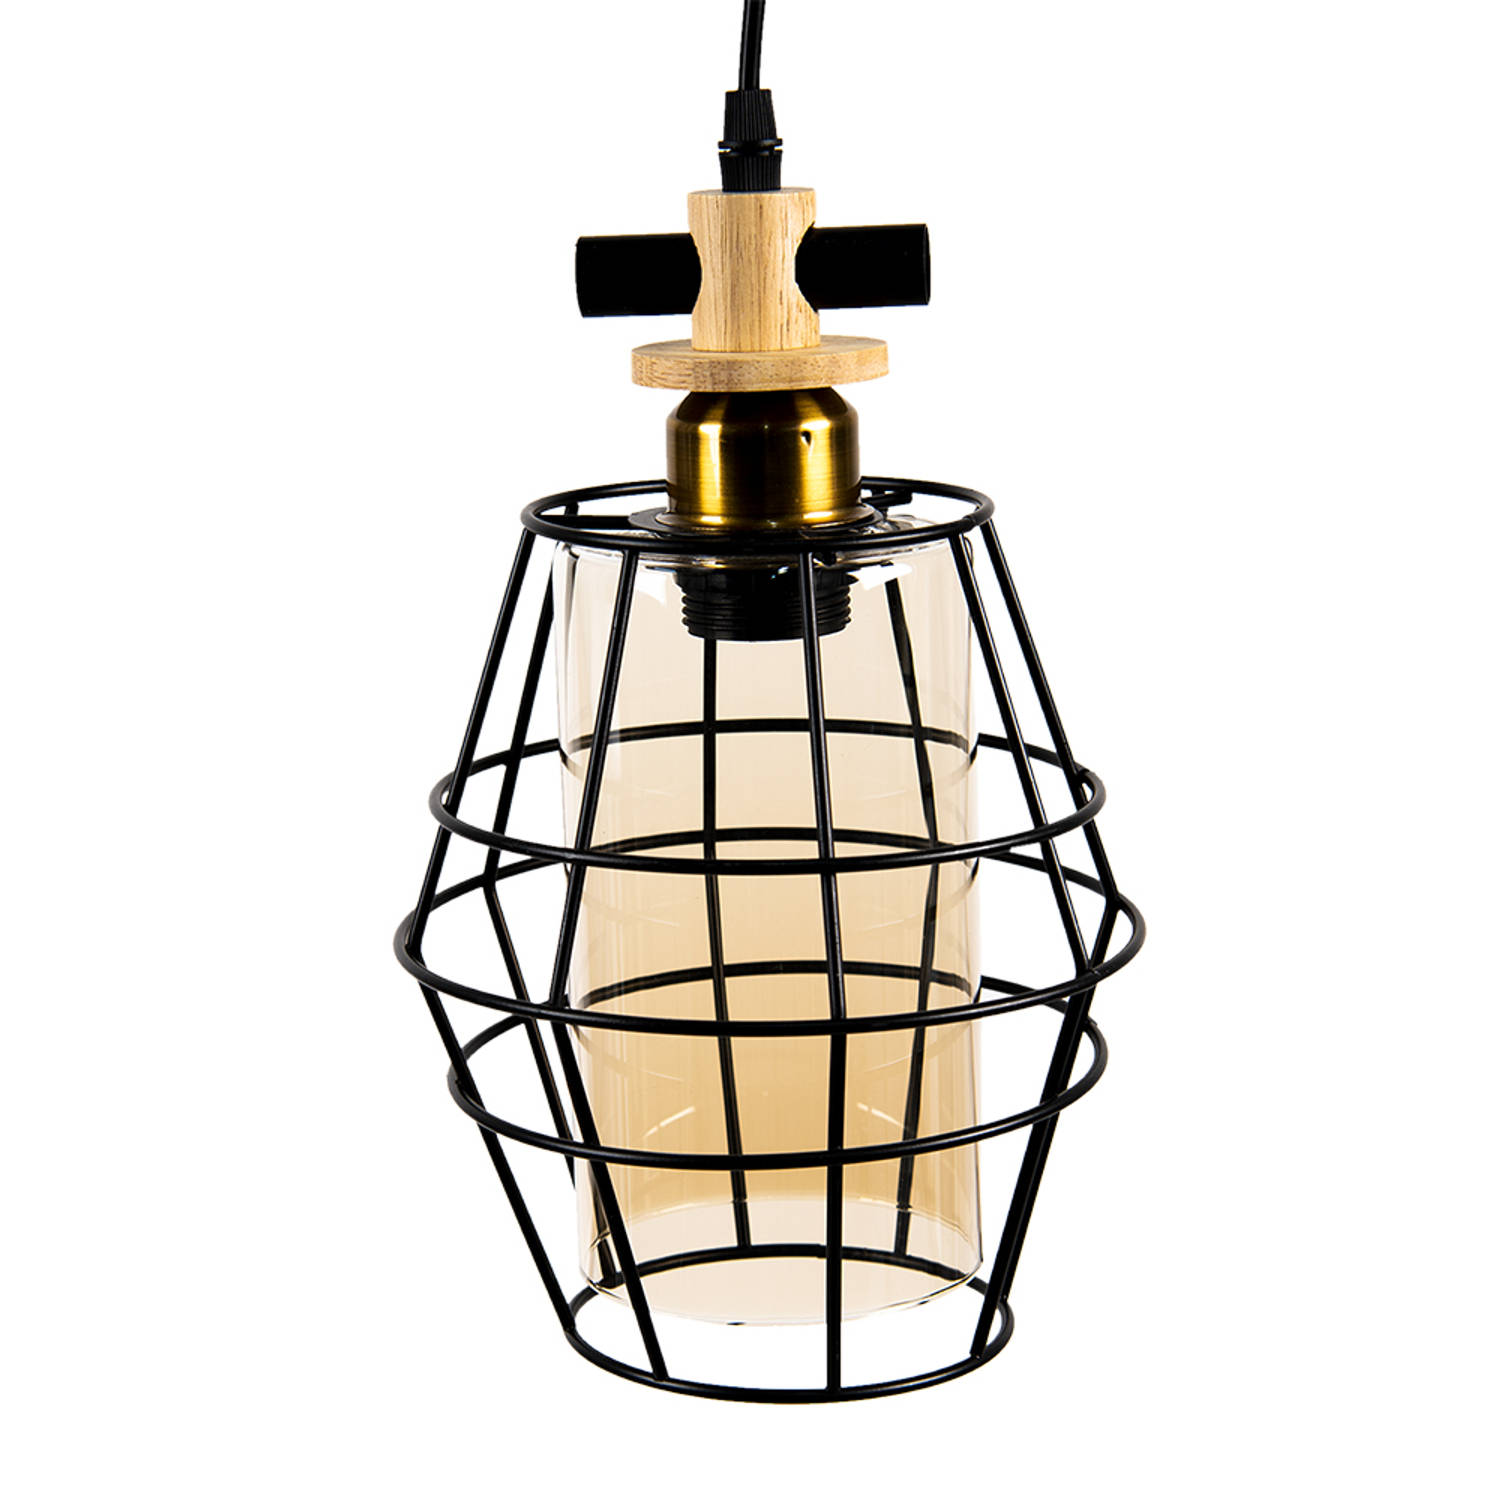 Clayre & Eef Hanglamp 22*18 Cm E27-max 1*40w Zwart Metaal, Glas Hanglamp Eettafel Hanglampen Eetkame